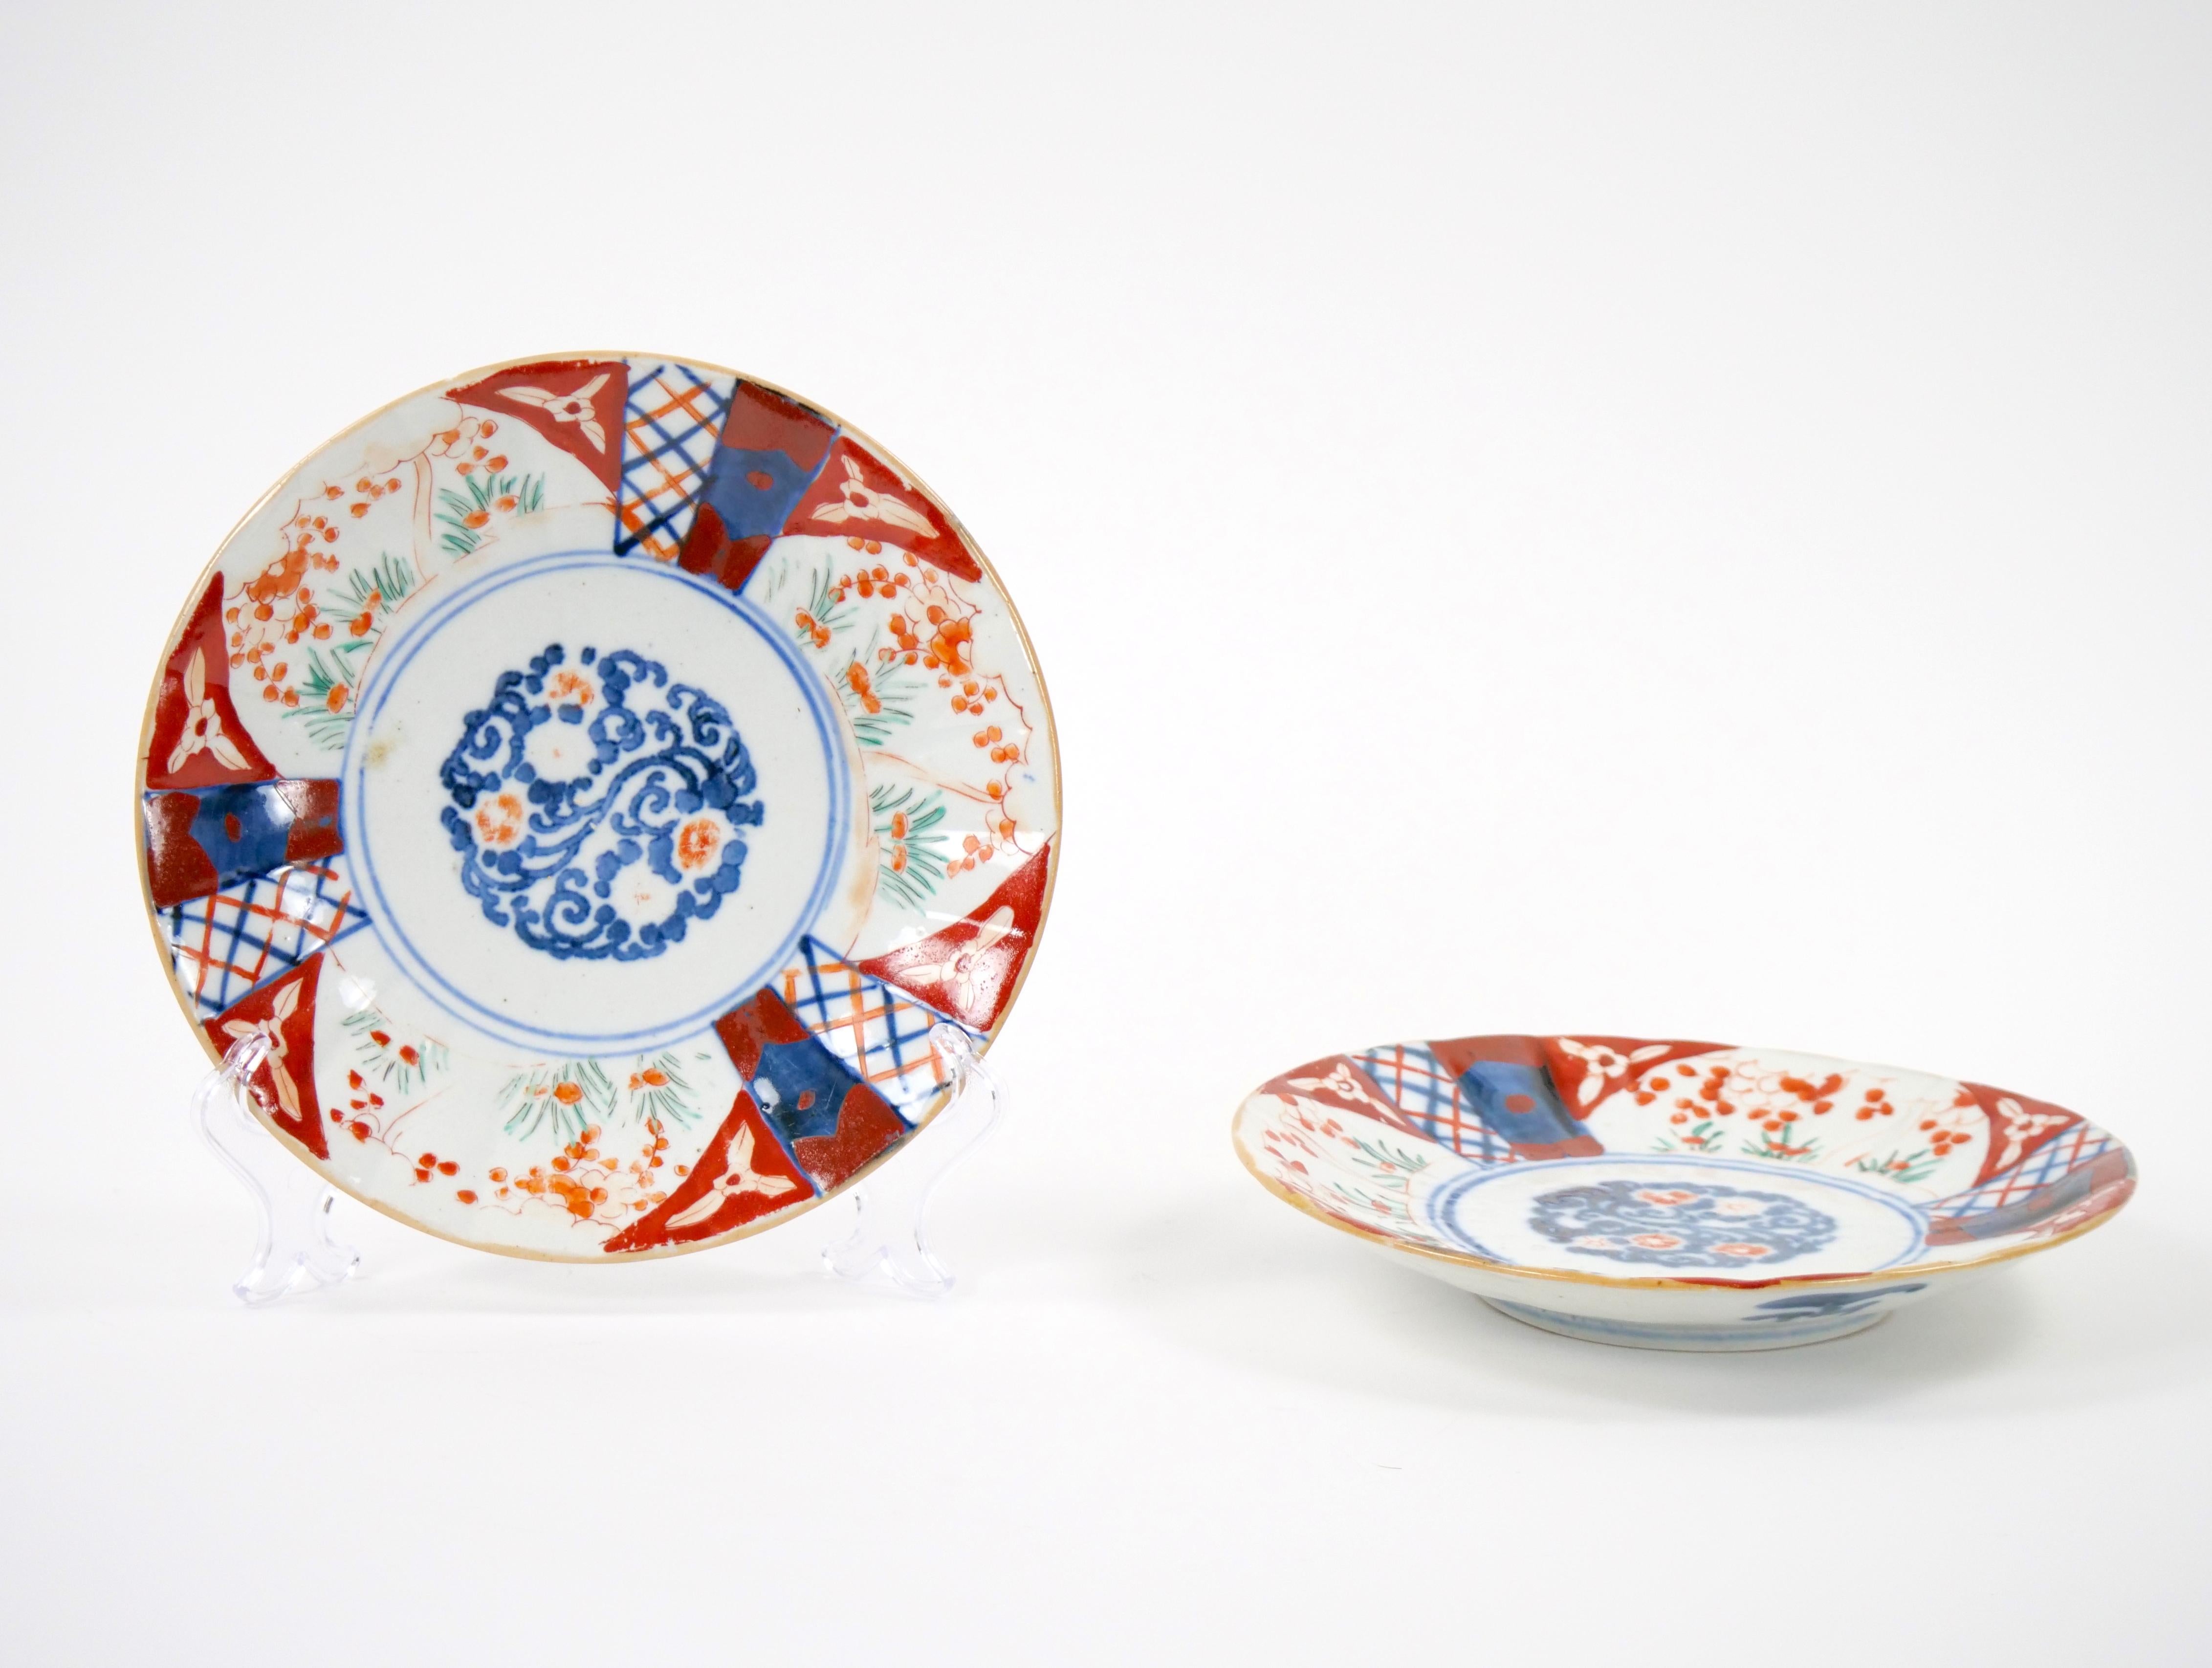 Machen Sie eine Zeitreise ins 19. Jahrhundert mit diesem bezaubernden Paar dekorativer Teller aus chinesischem Exportporzellan von Imari. Diese Teller verkörpern die Essenz einer vergangenen Ära, in der die Kunstfertigkeit des chinesischen